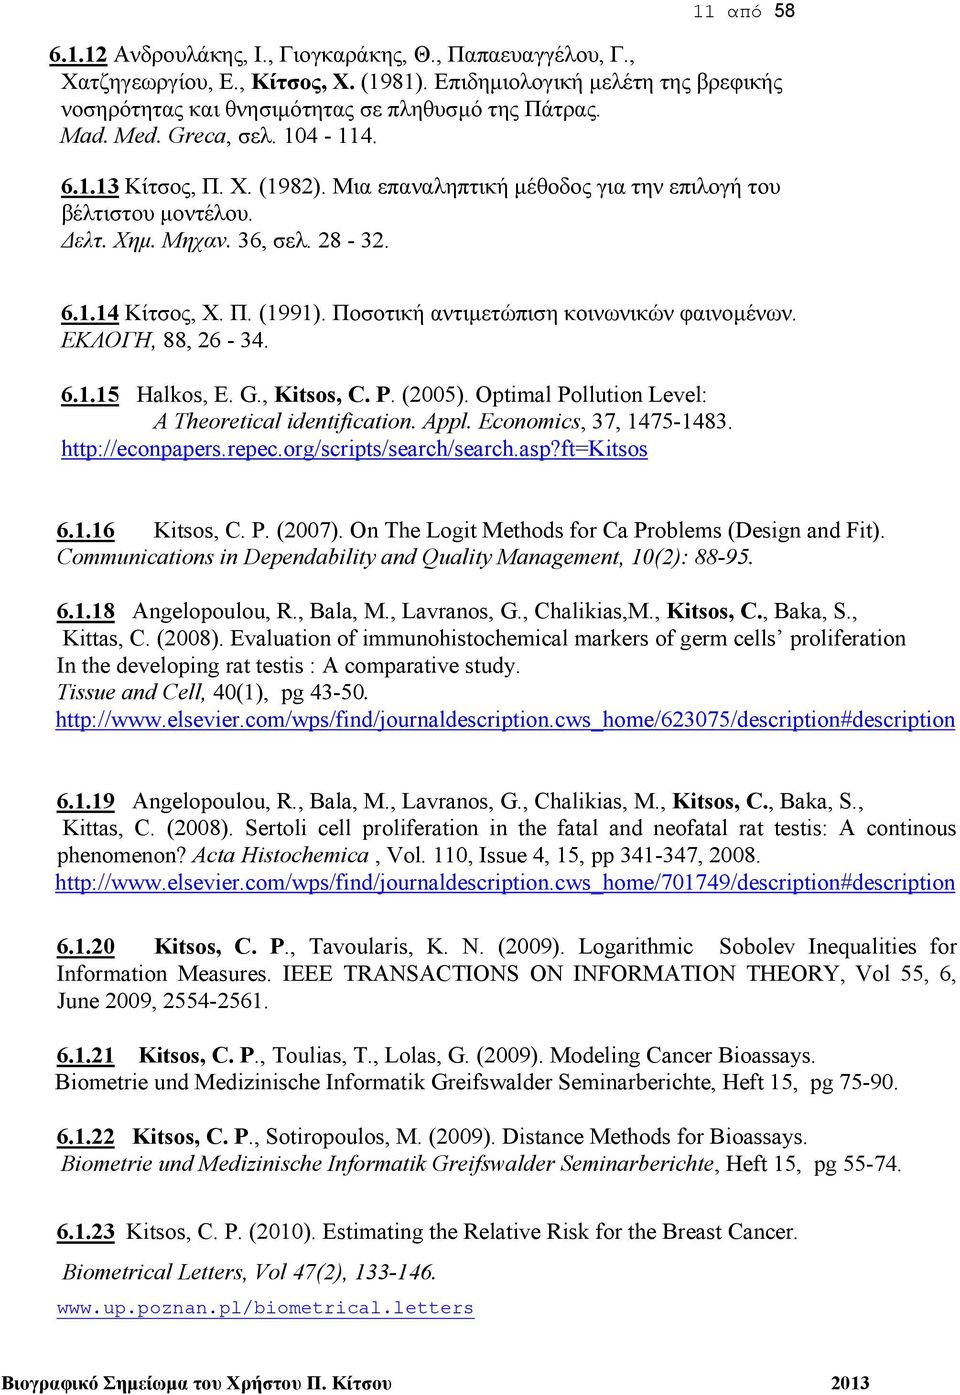 Ποσοτική αντιμετώπιση κοινωνικών φαινομένων. ΕΚΛΟΓΗ, 88, 26-34. 6.1.15 Ηalkos, E. G., Kitsos, C. P. (2005). Optimal Pollution Level: A Theoretical identification. Appl. Economics, 37, 1475-1483.